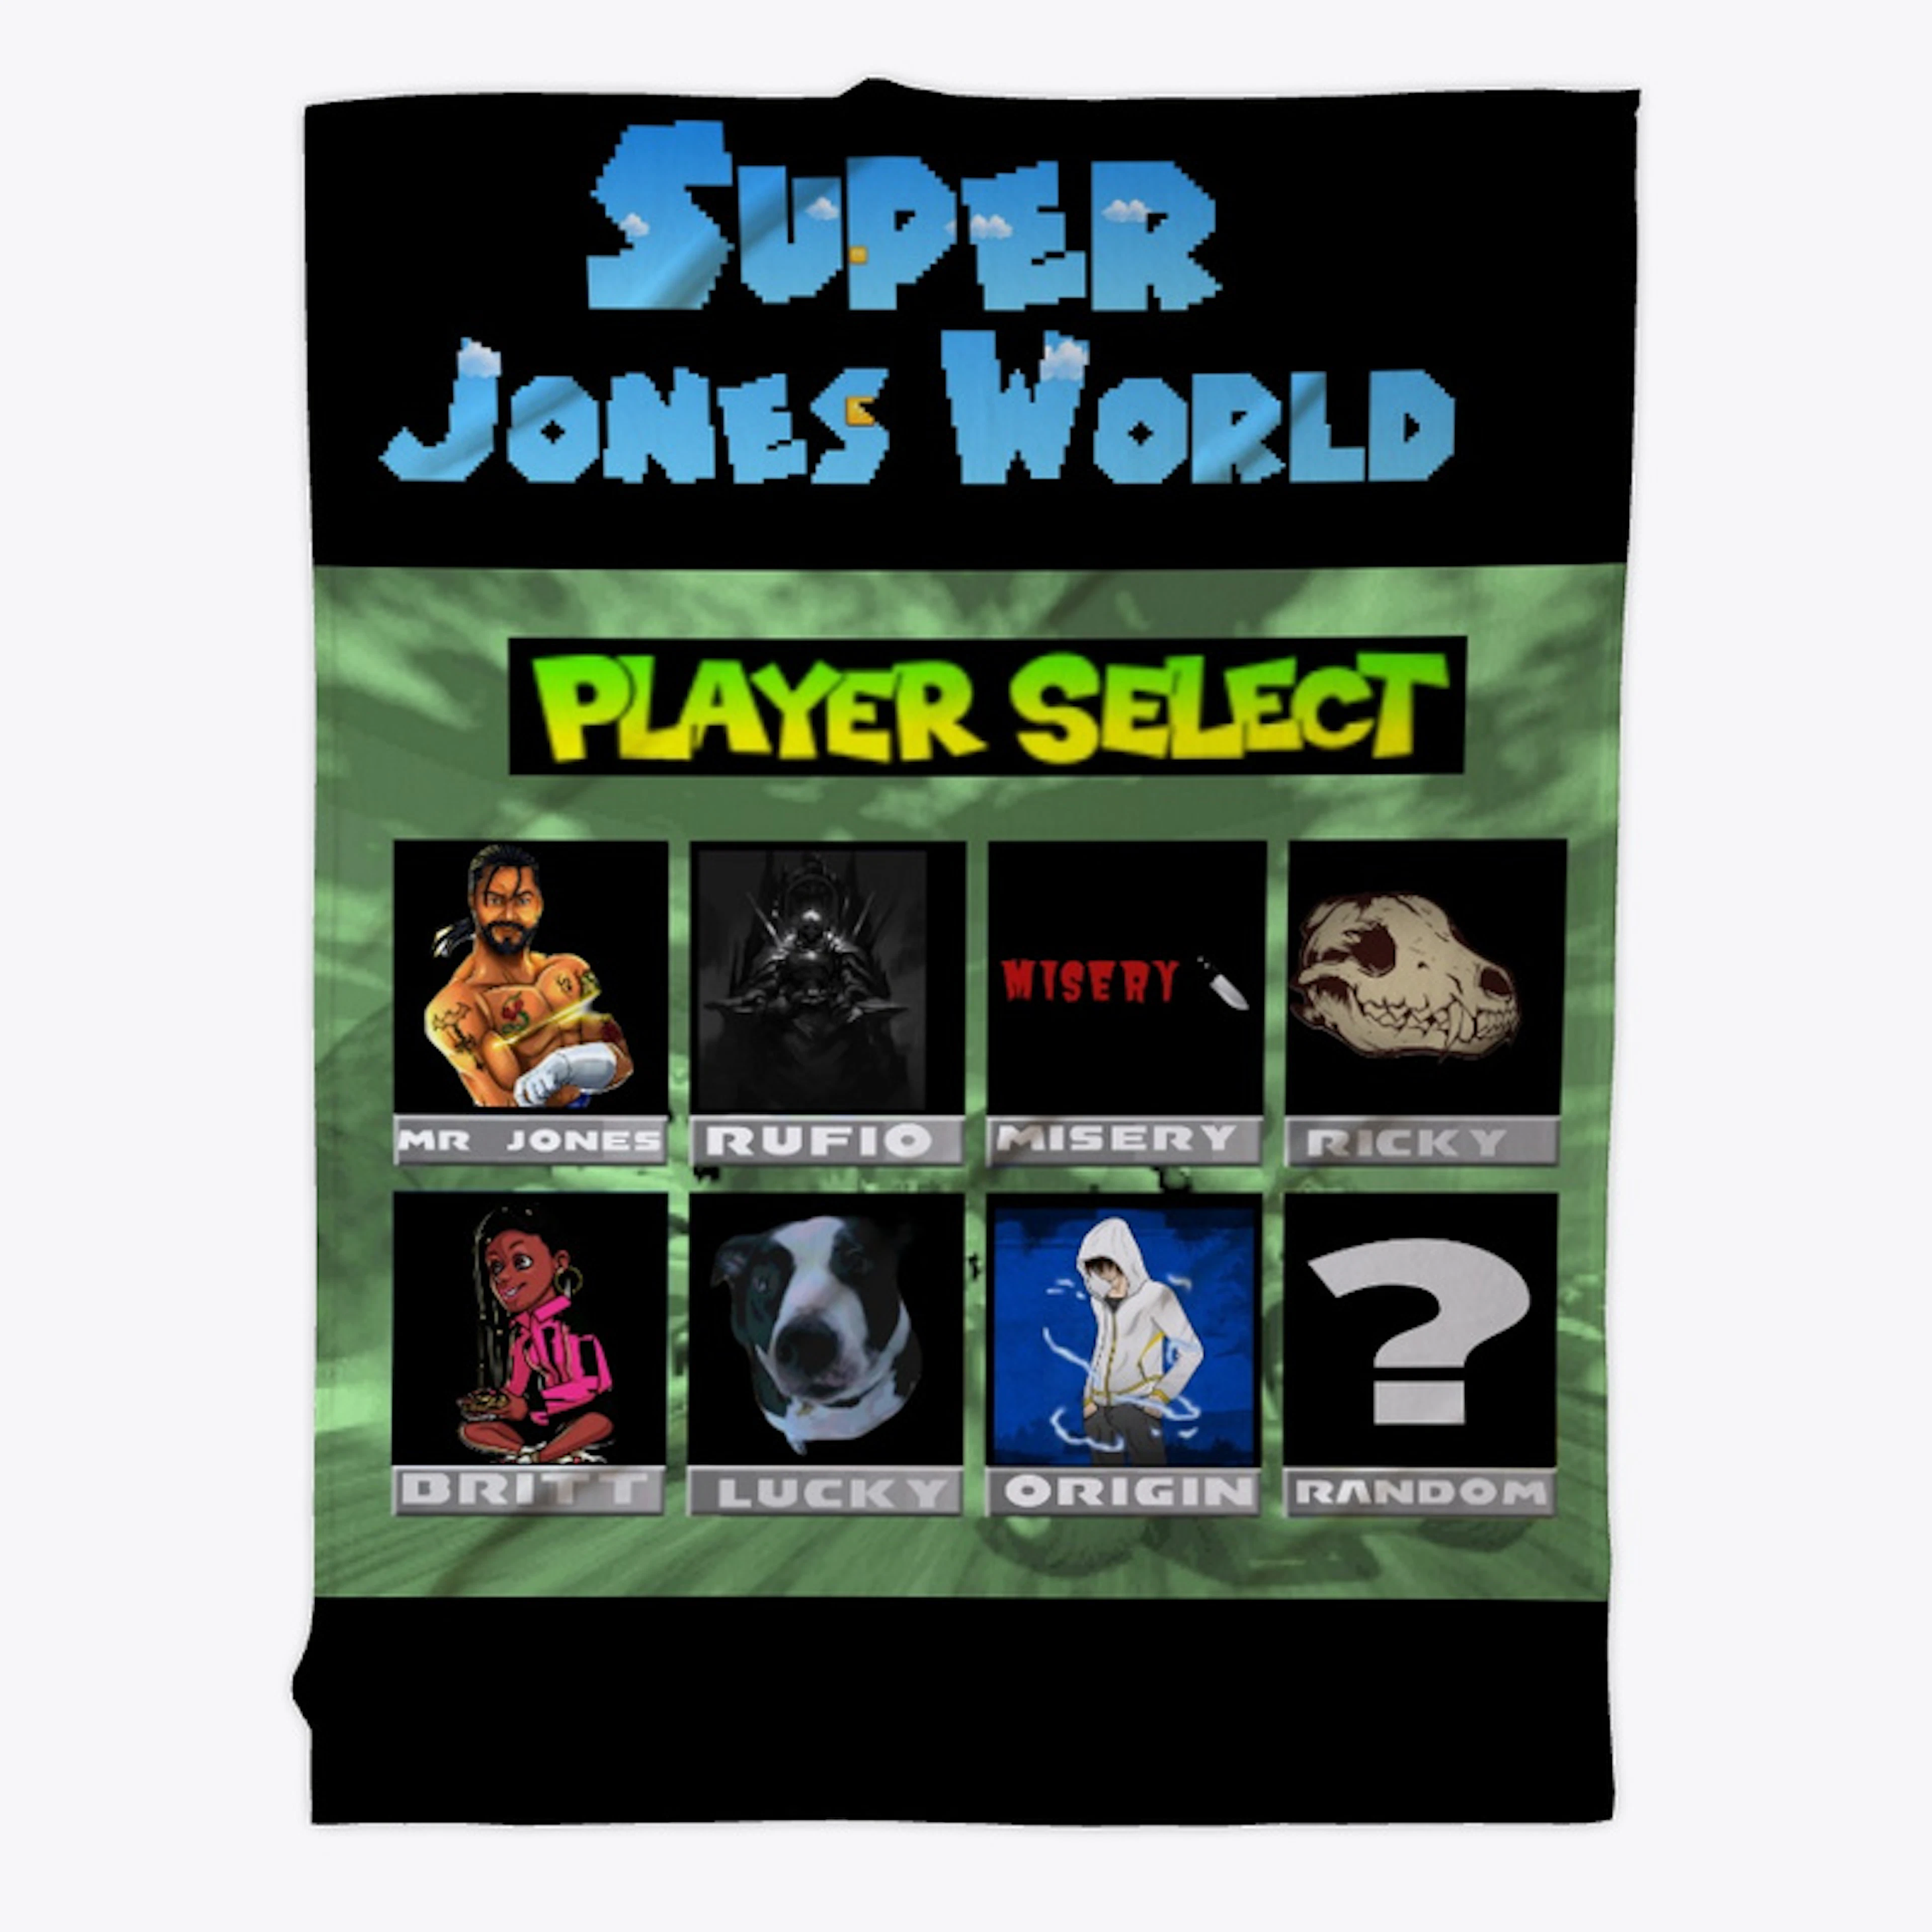 Super Jones World tee